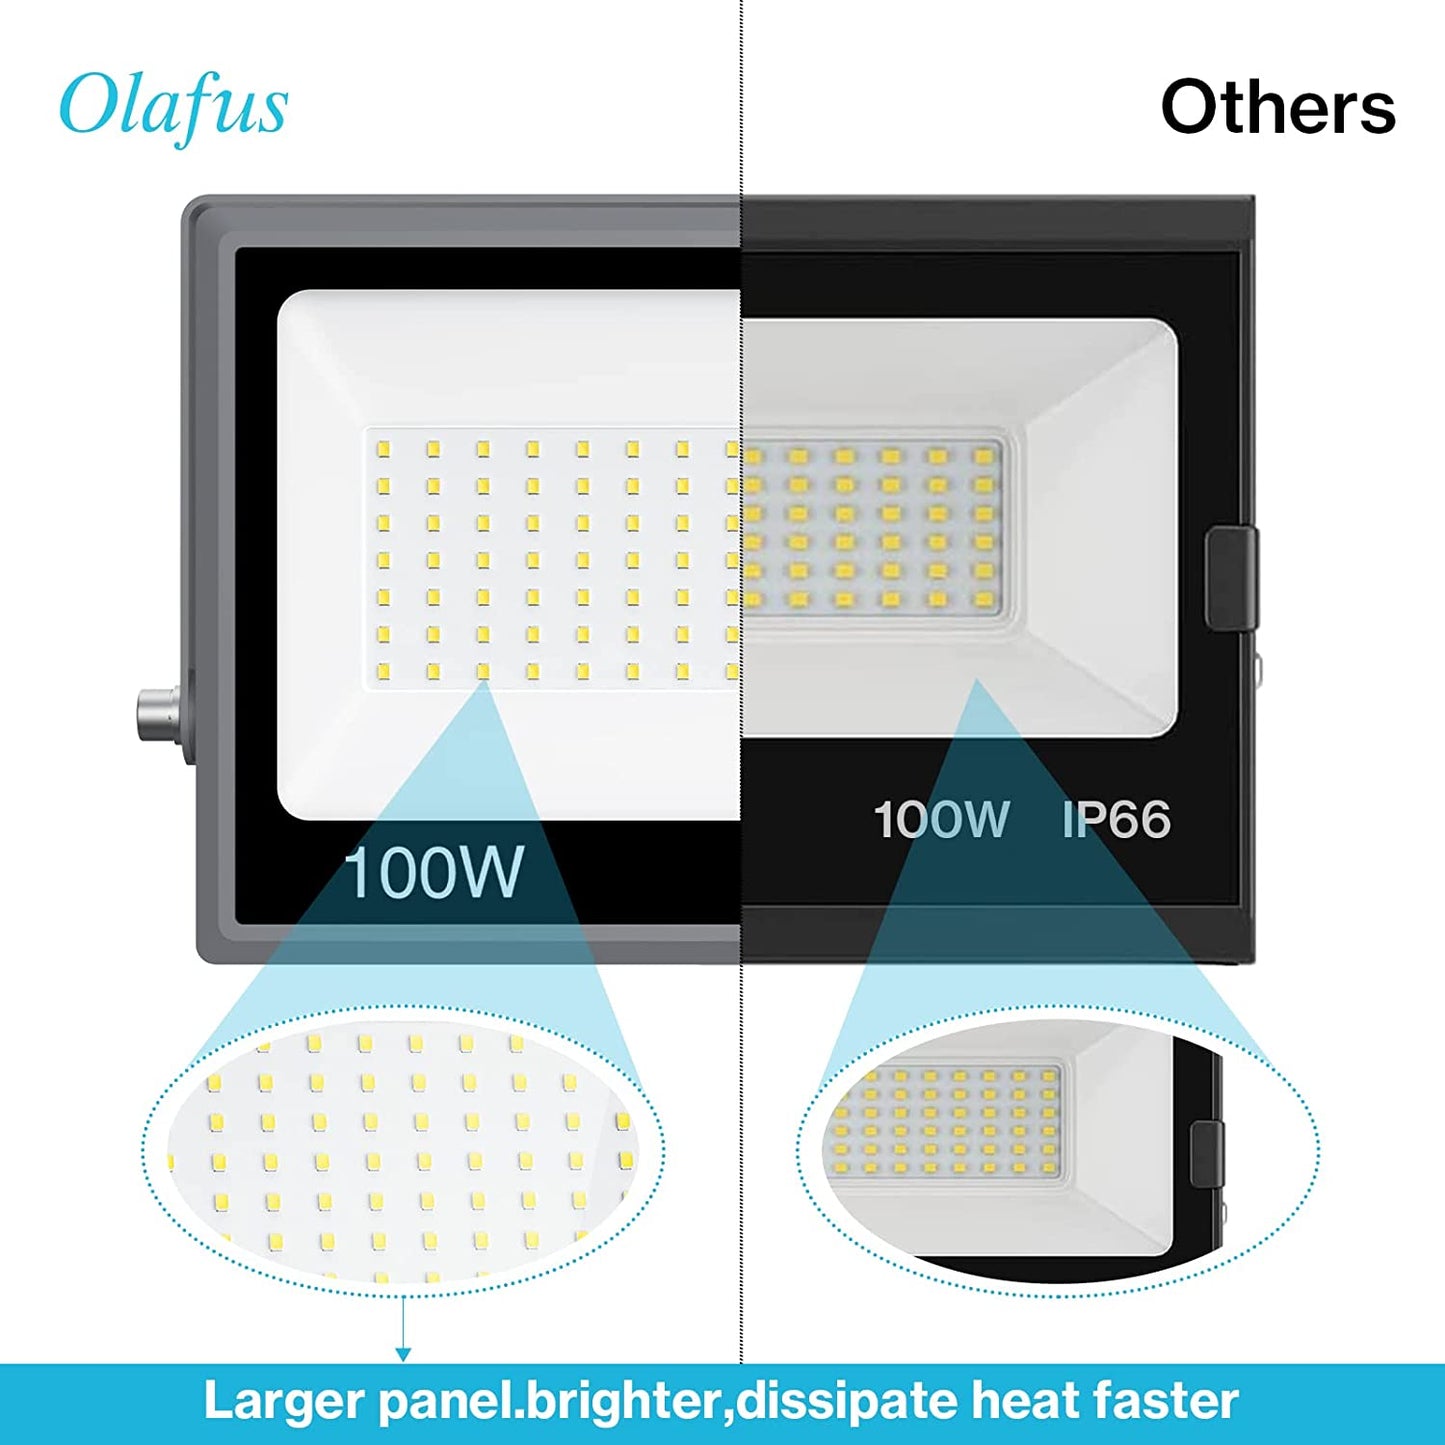 Olafus 100W LED Flood Light 2 Pack - Gray